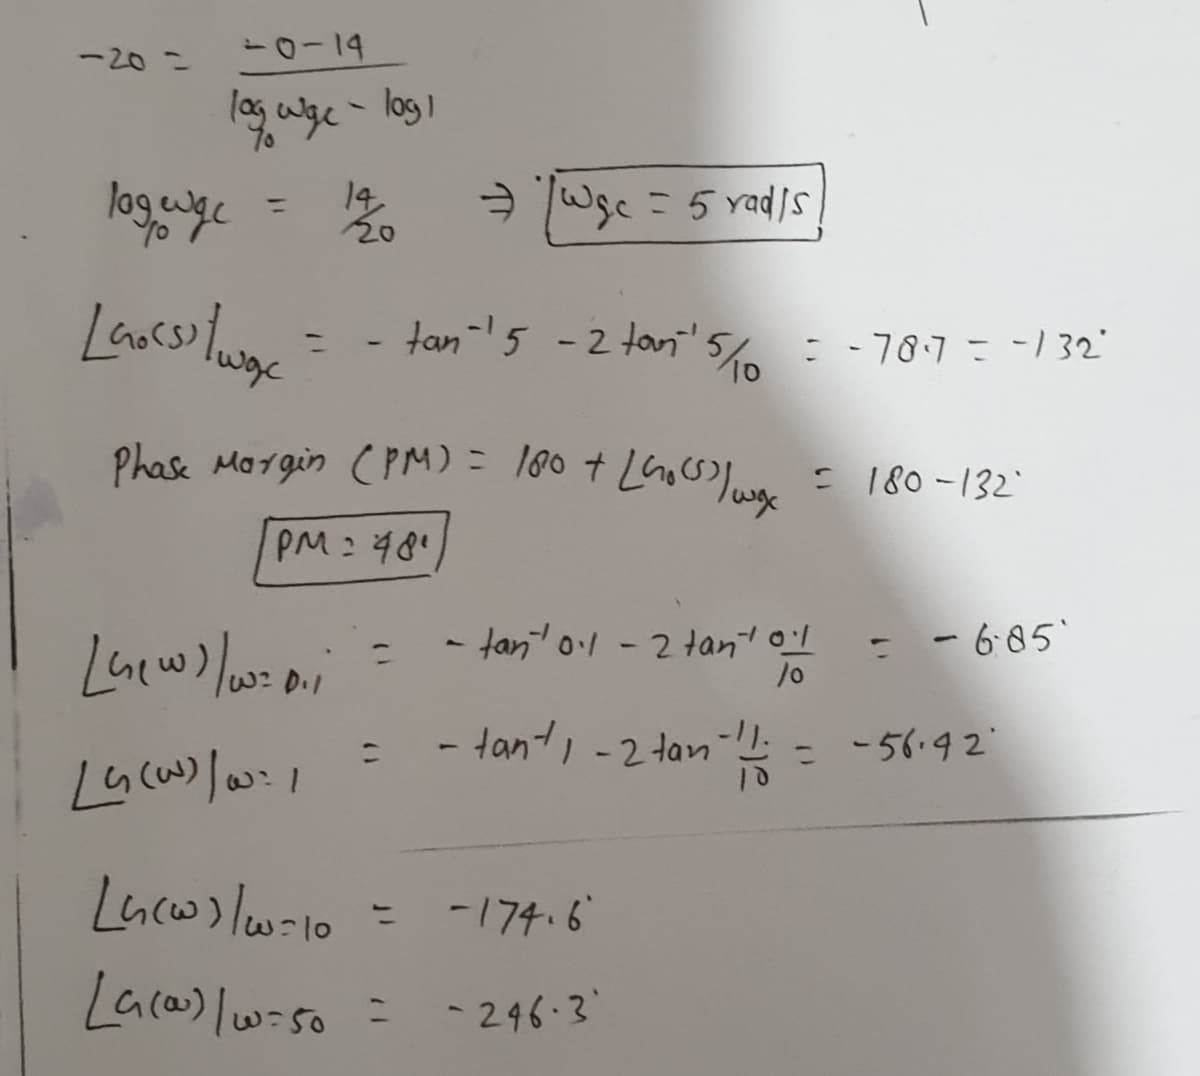 -20 =
14
A Wsc = 5 rads
%3D
- tan-5 -2tan'5c =-787=-132"
%3D
Phase Margin (PM) = l80 + LGocso low
: 180-132
PM:481
- tan ol-2 tan ol
- - 6:05'
/0
D.1
- tant, -2 tan
- -56.92
1.
-174.6
%3D
Laca) lwiso =
- 246-3
